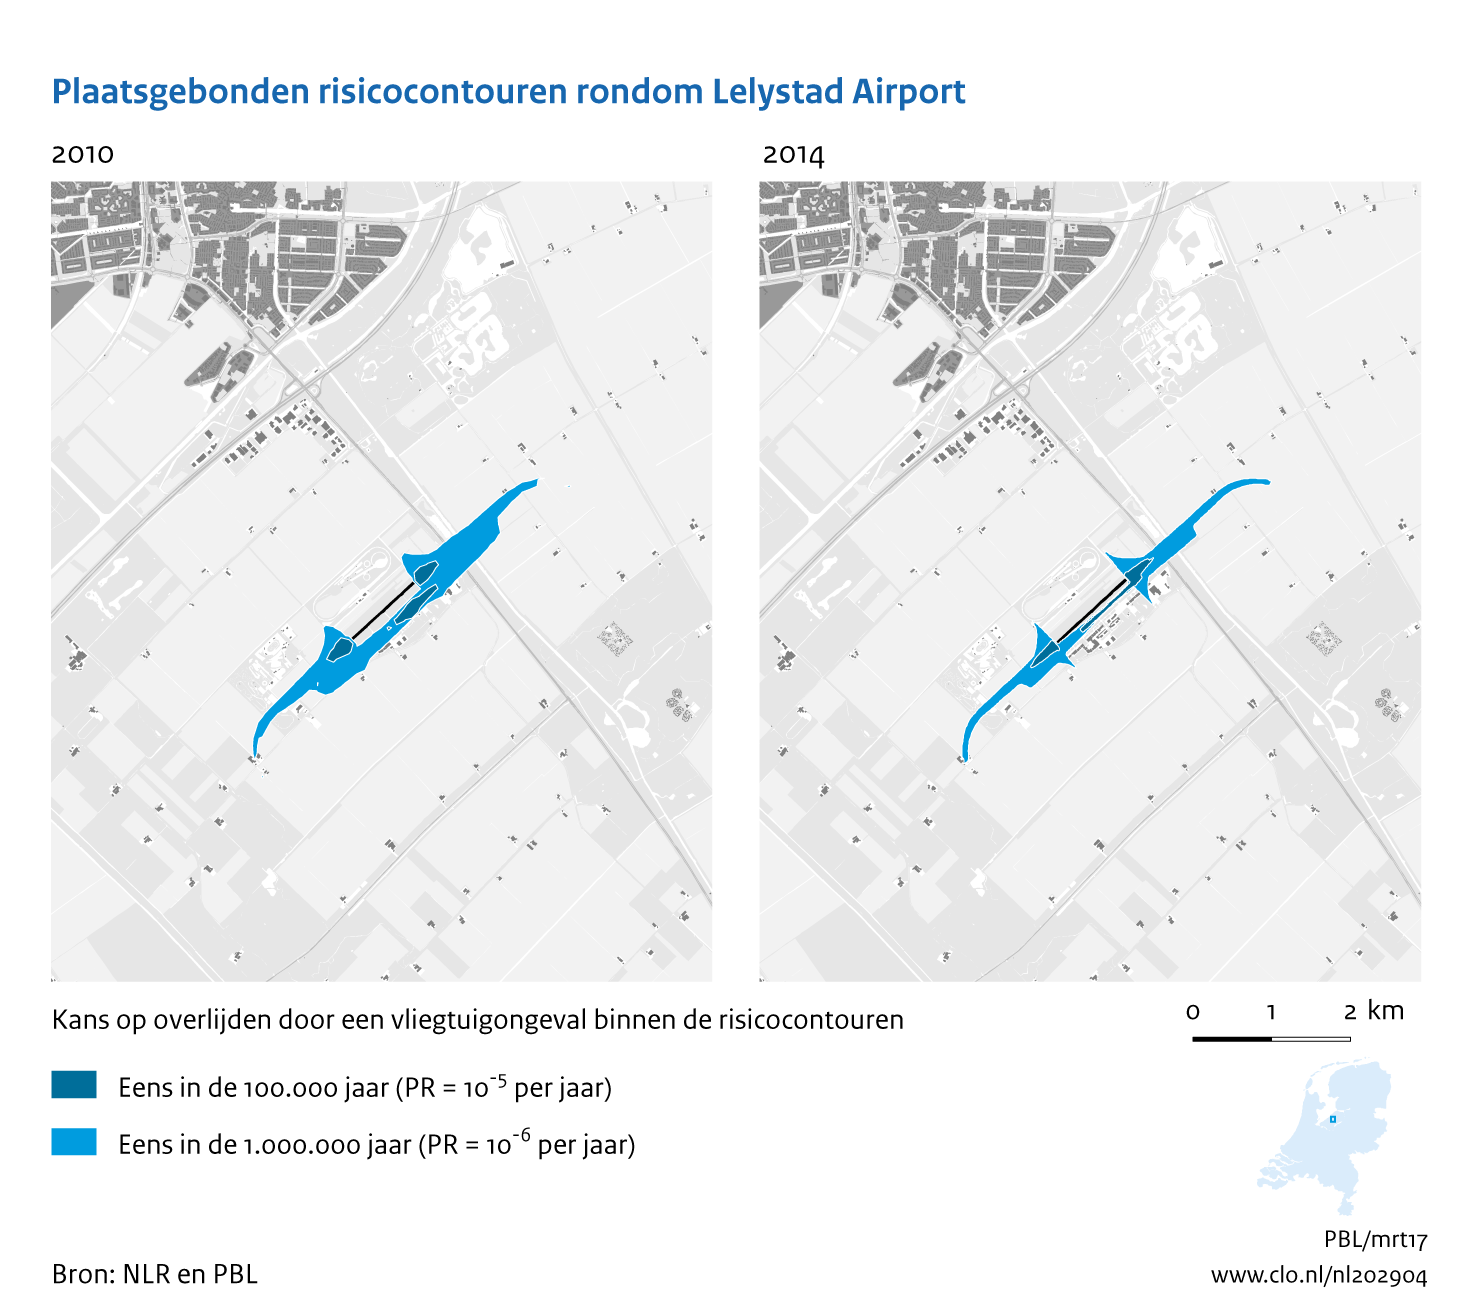 Figuur Plaatsgebonden risicocontouren rondom Lelystad Airport, 2010-2014. In de rest van de tekst wordt deze figuur uitgebreider uitgelegd.